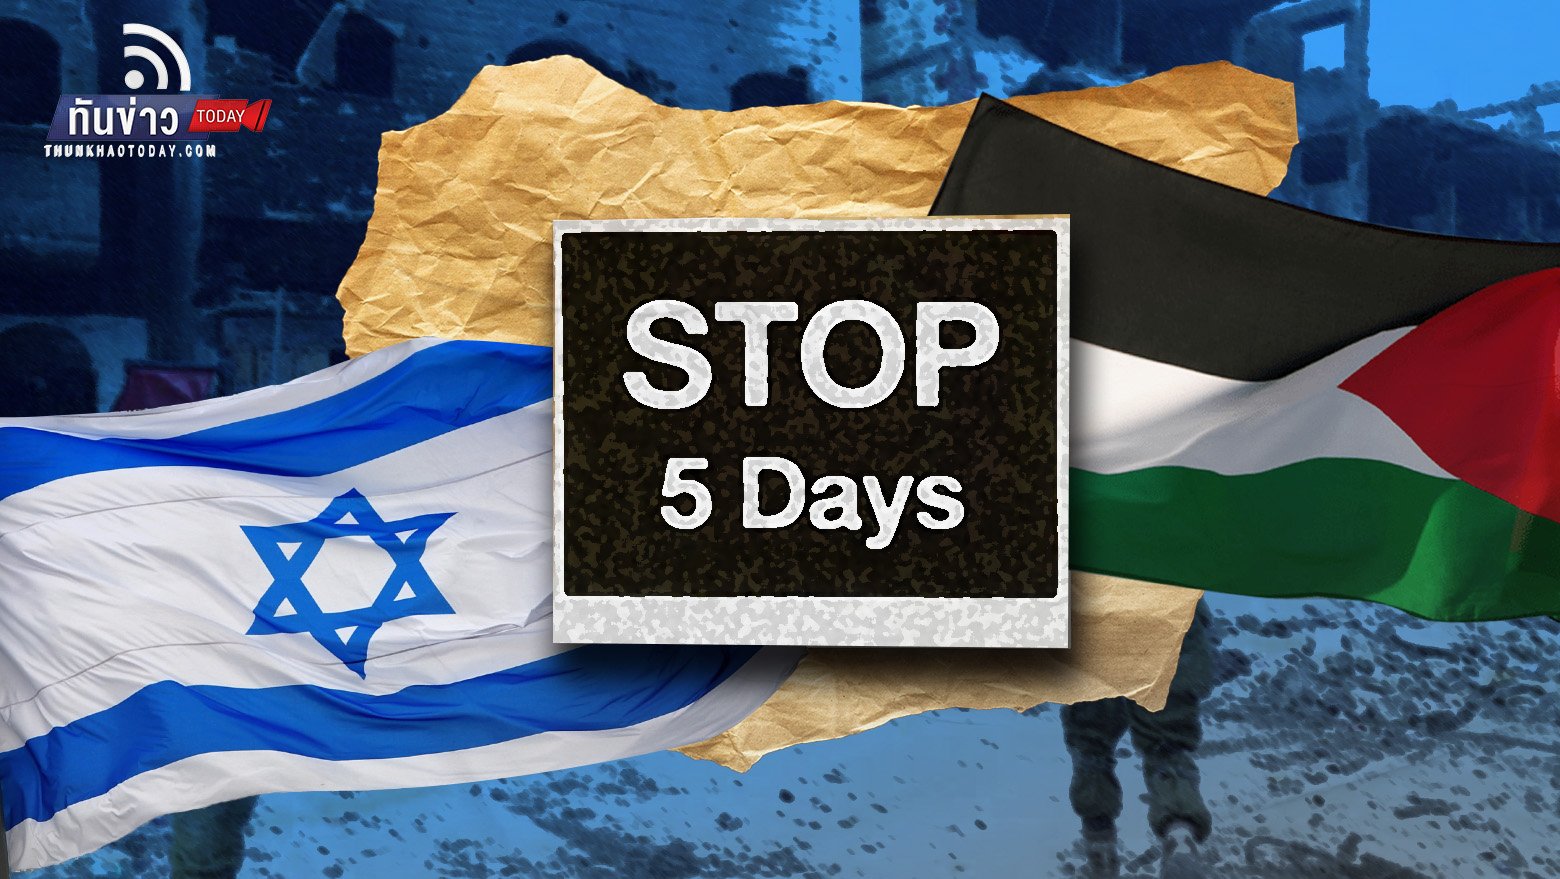 อิสราเอล - ฮามาส จะหยุดรบ 5 วัน แลกตัวประกันกว่า 50 คน